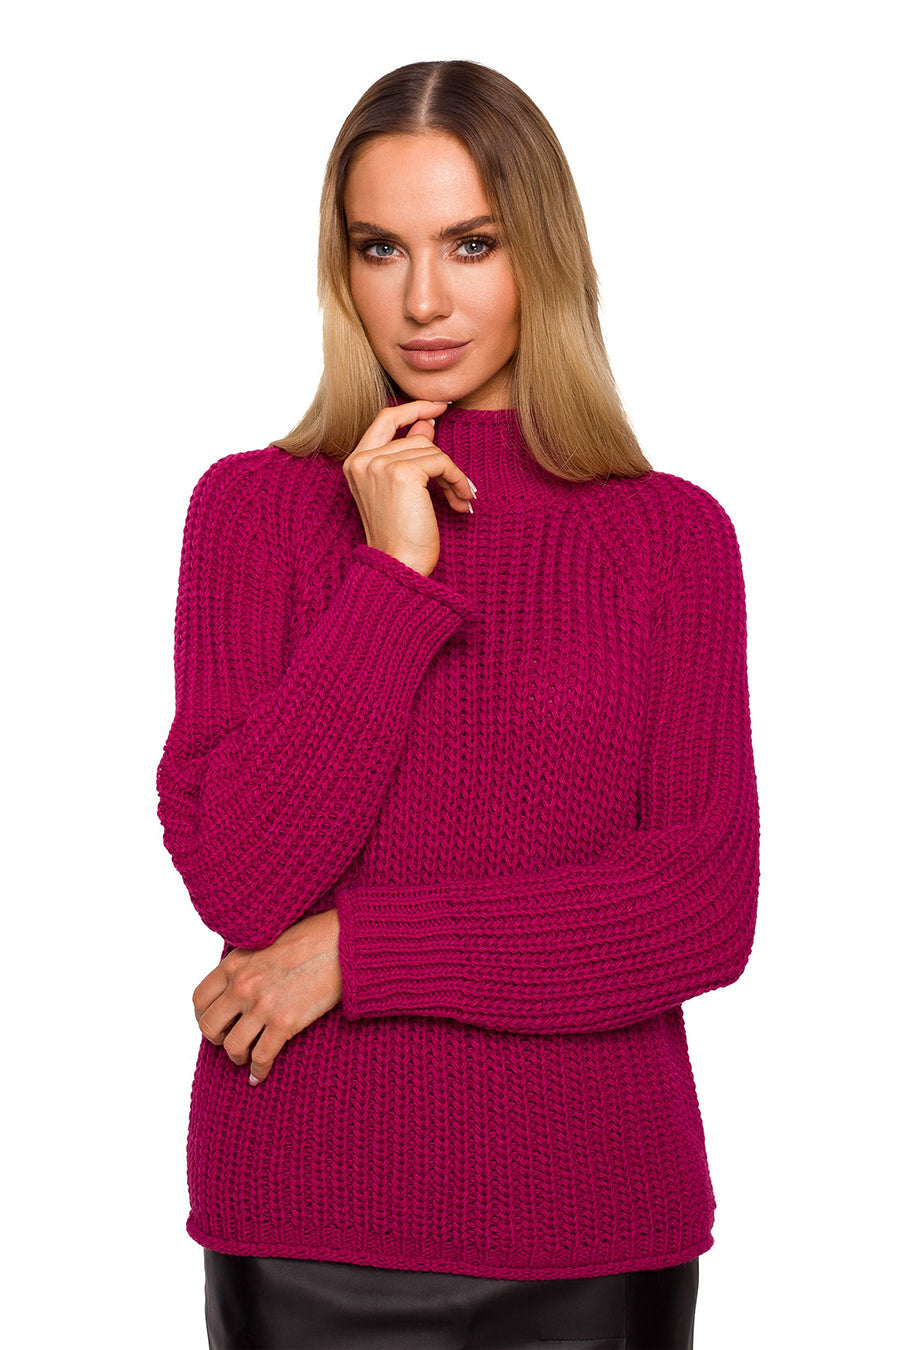 Дамски пуловер Audelia, Розов 3